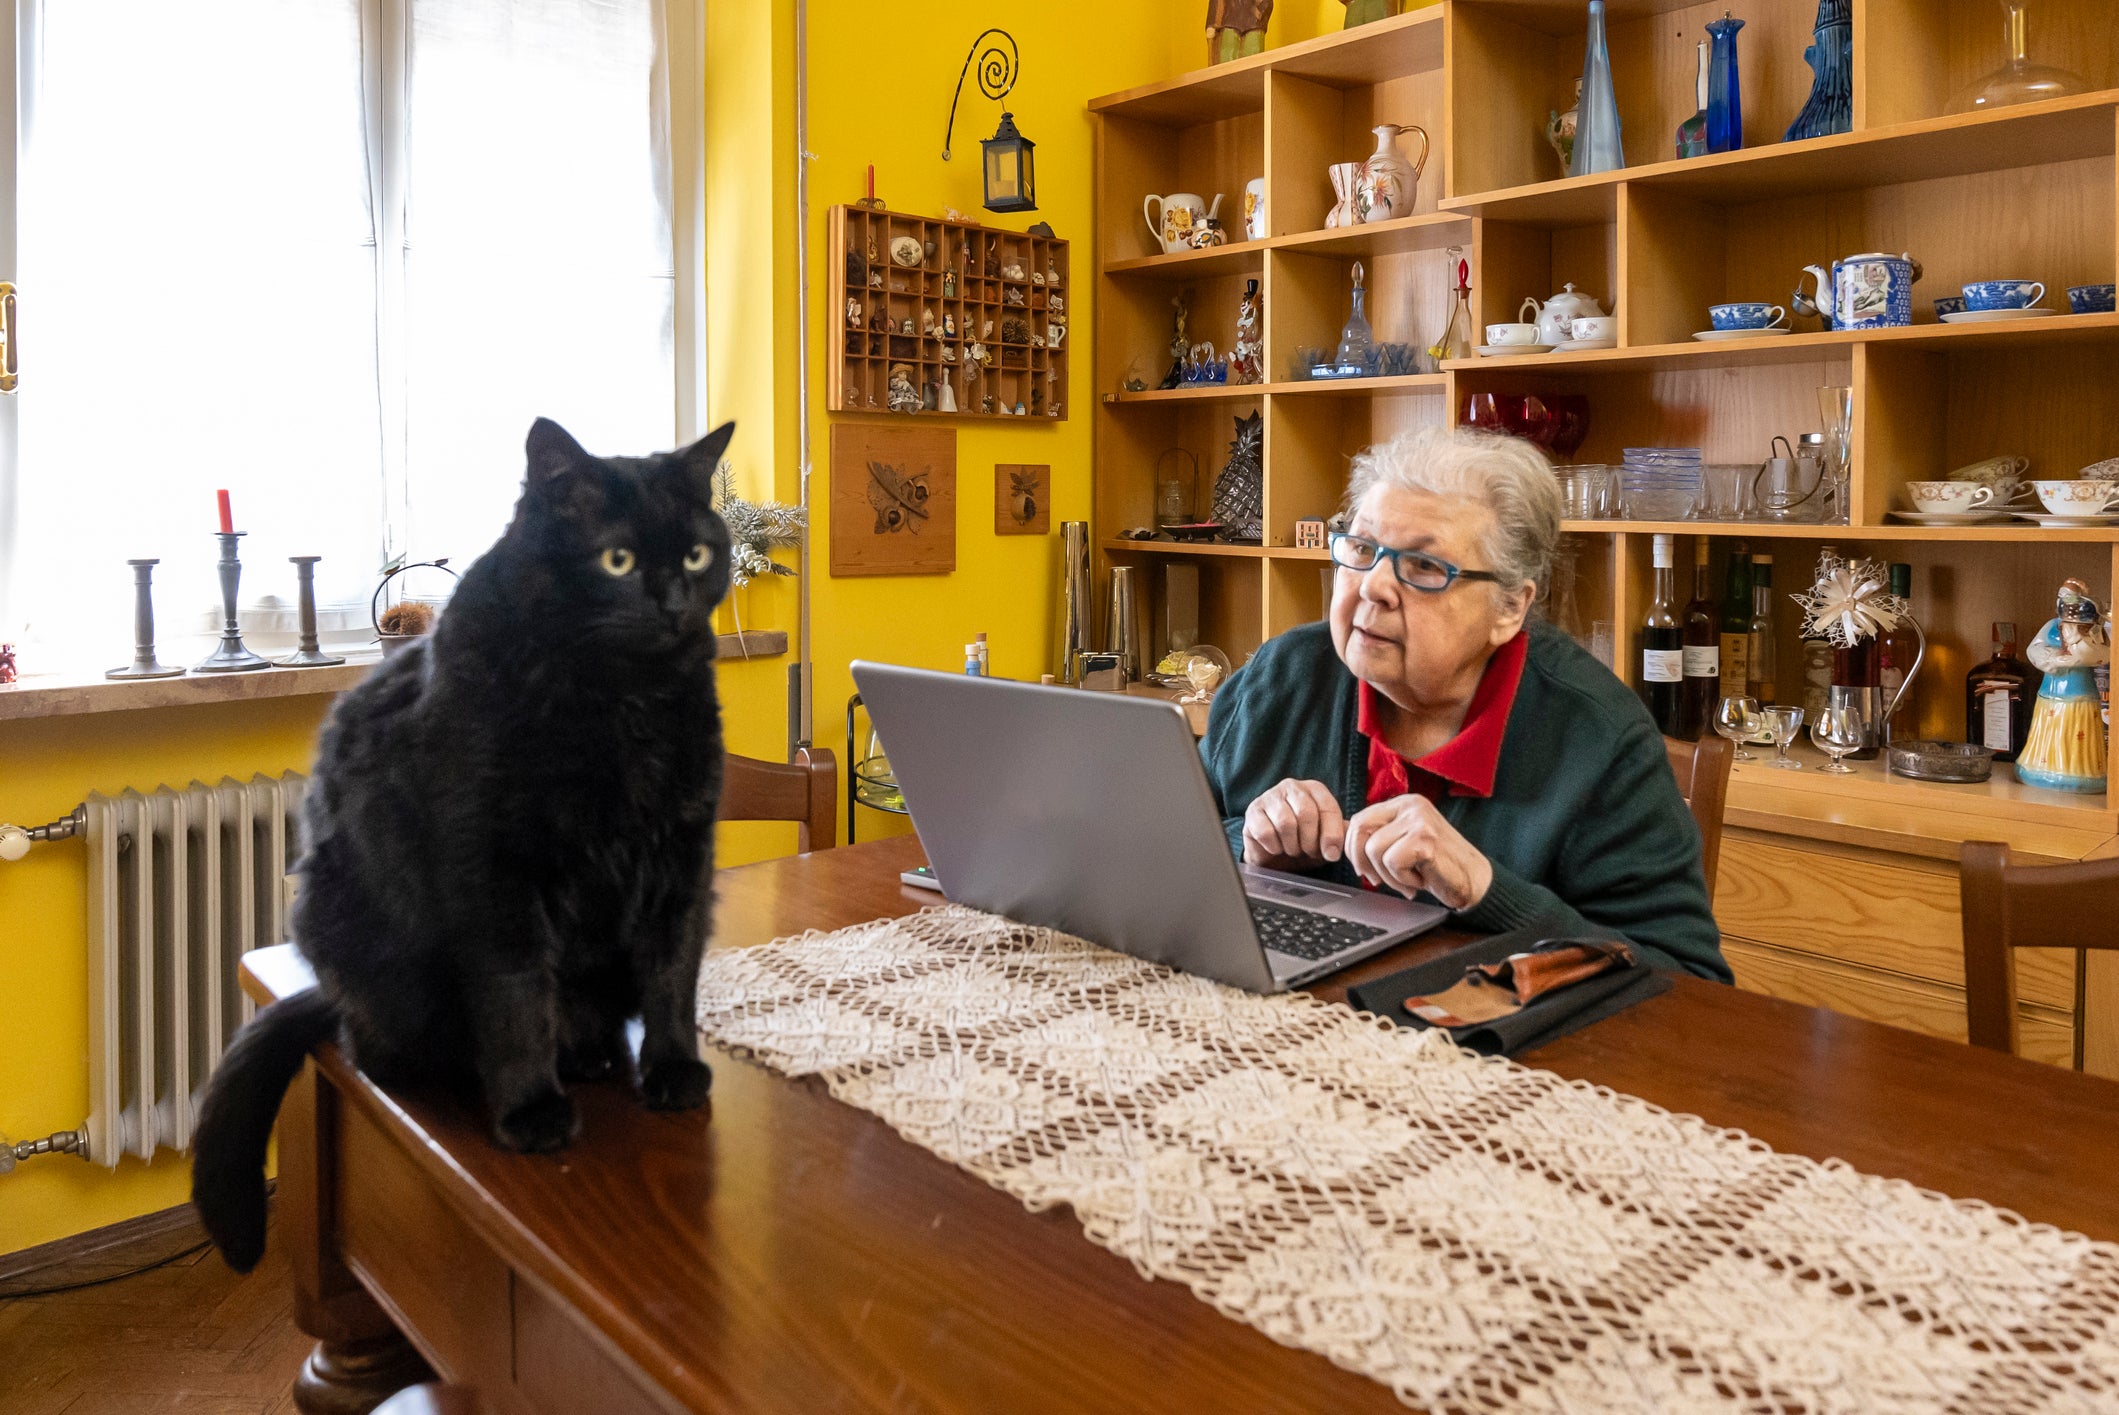 Gato preto sentado em cima de mesa enquanto tutora idosa o observa